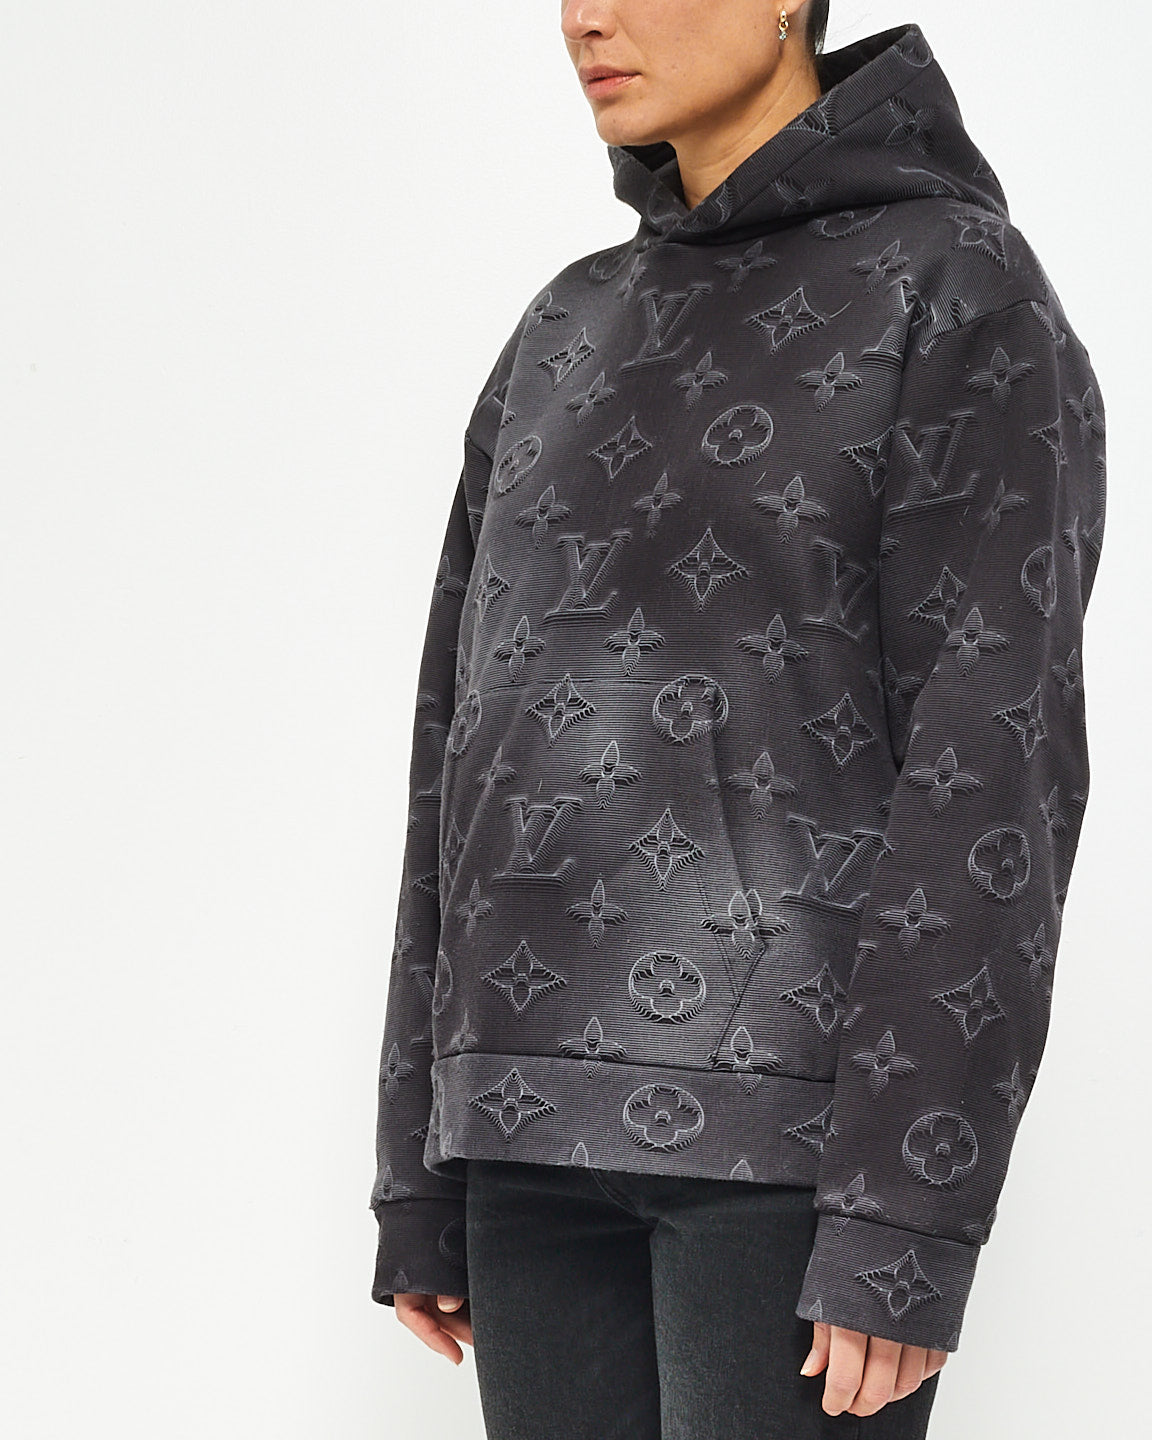 Louis Vuitton Black/Grey 3D Monogram Hoodie Sweatshirt - M